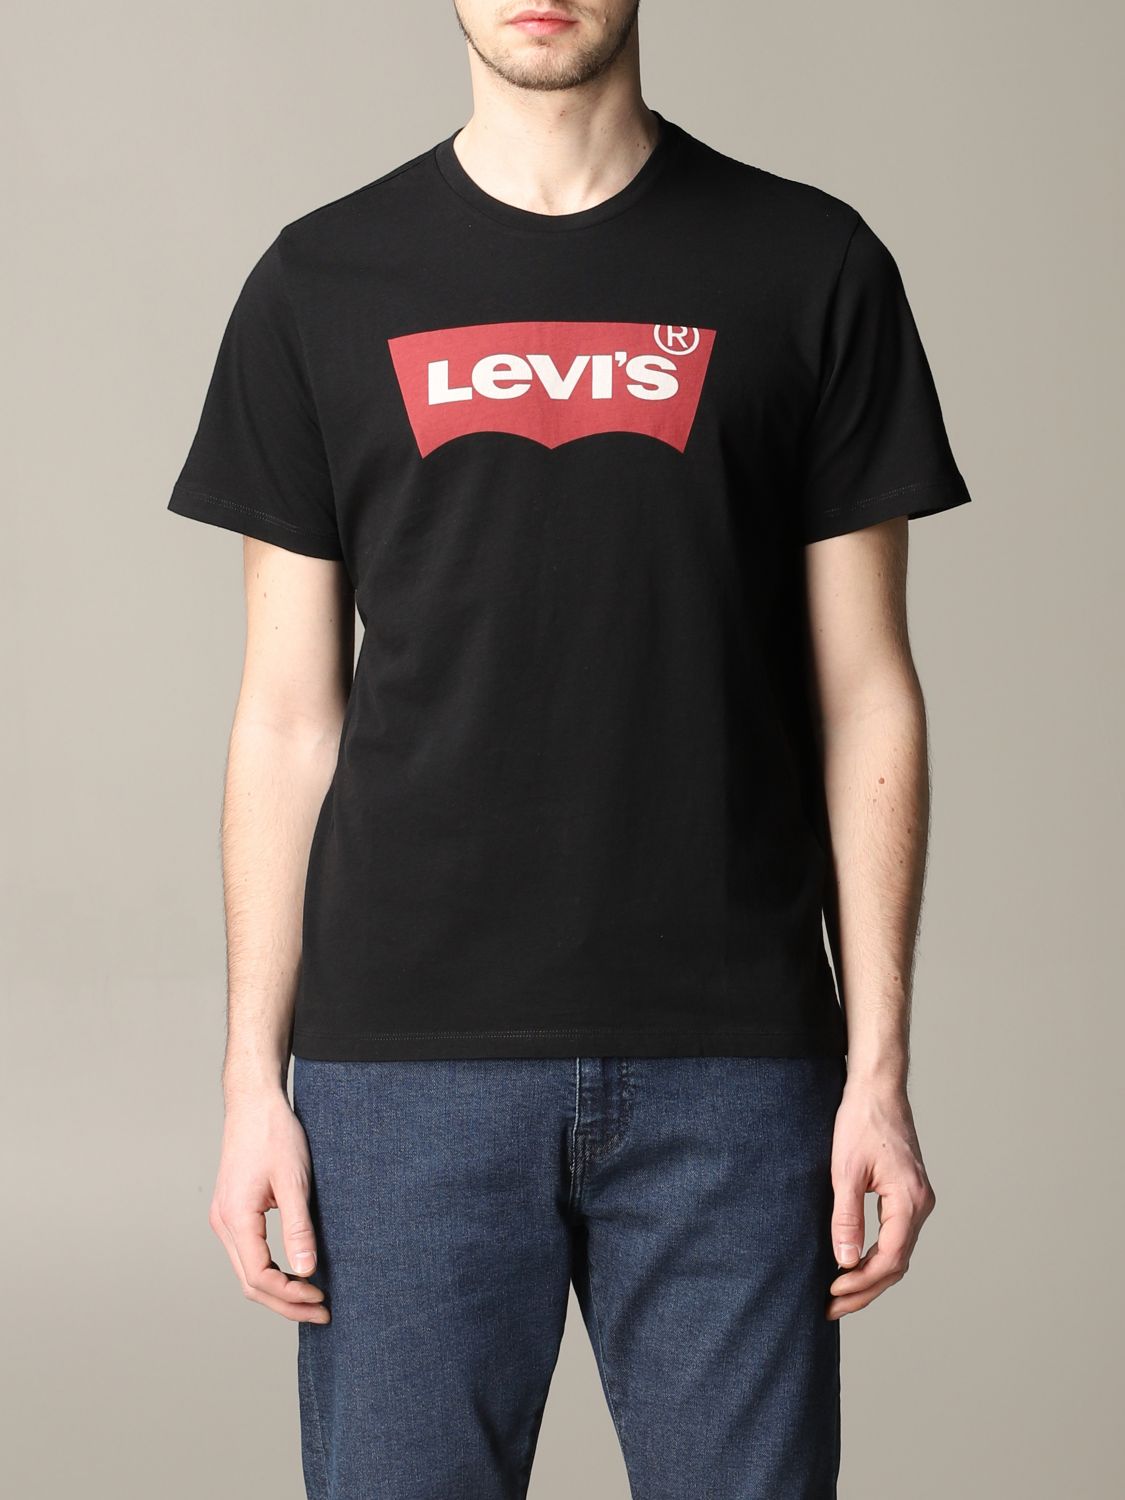 levis black t shirt